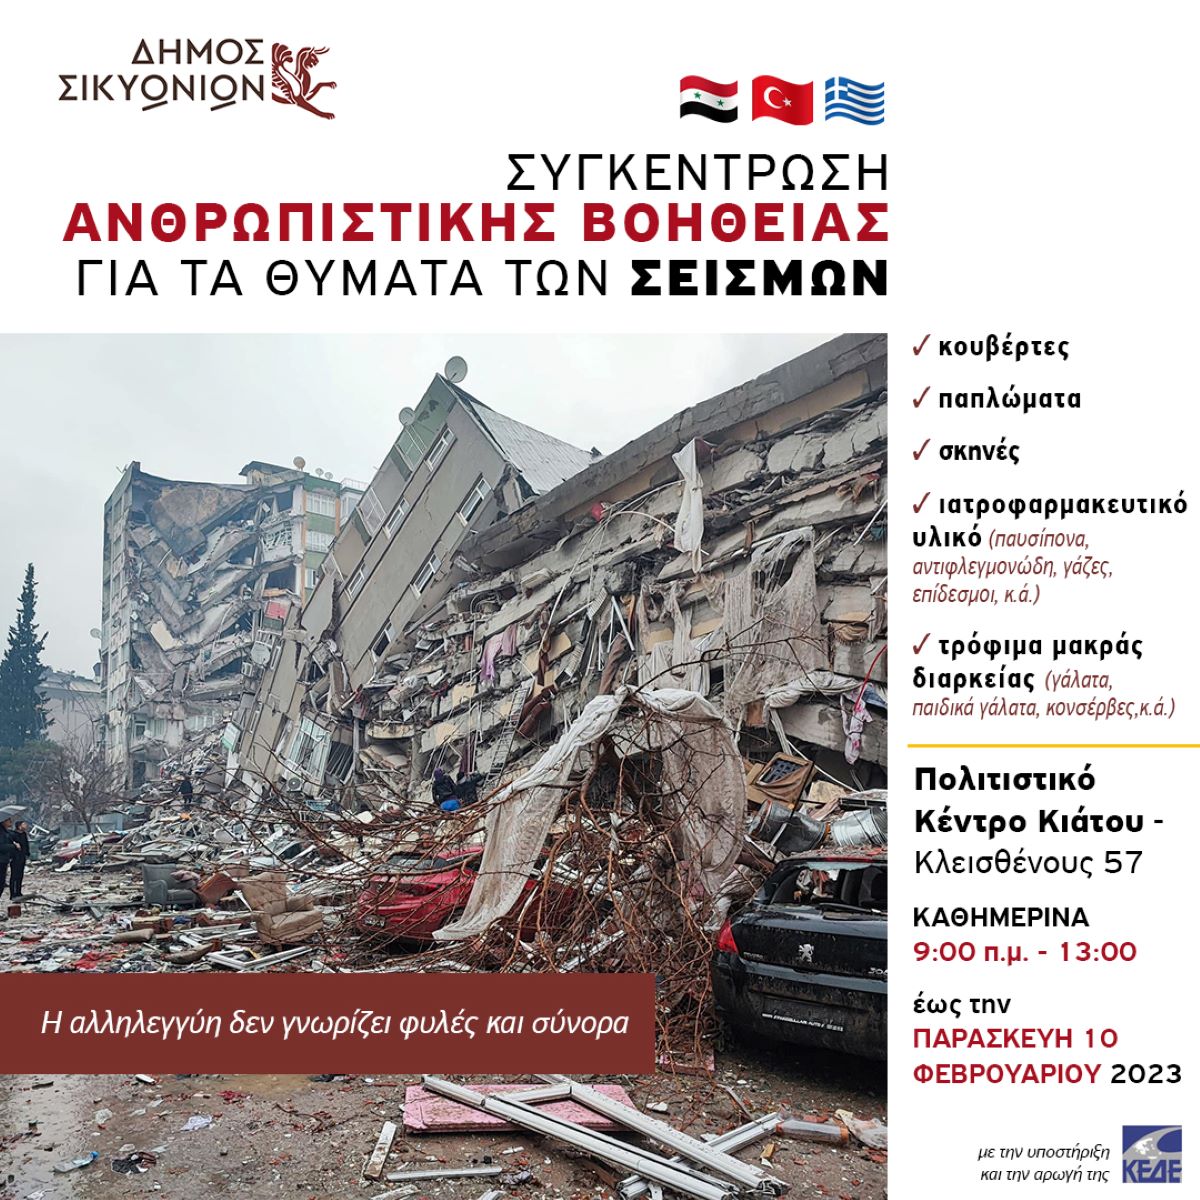 Ανθρωπιστική βοήθεια για τα θύματα των σεισμών από τους δήμους Σικυωνίων και Βέλου – Βόχας Κορινθίας